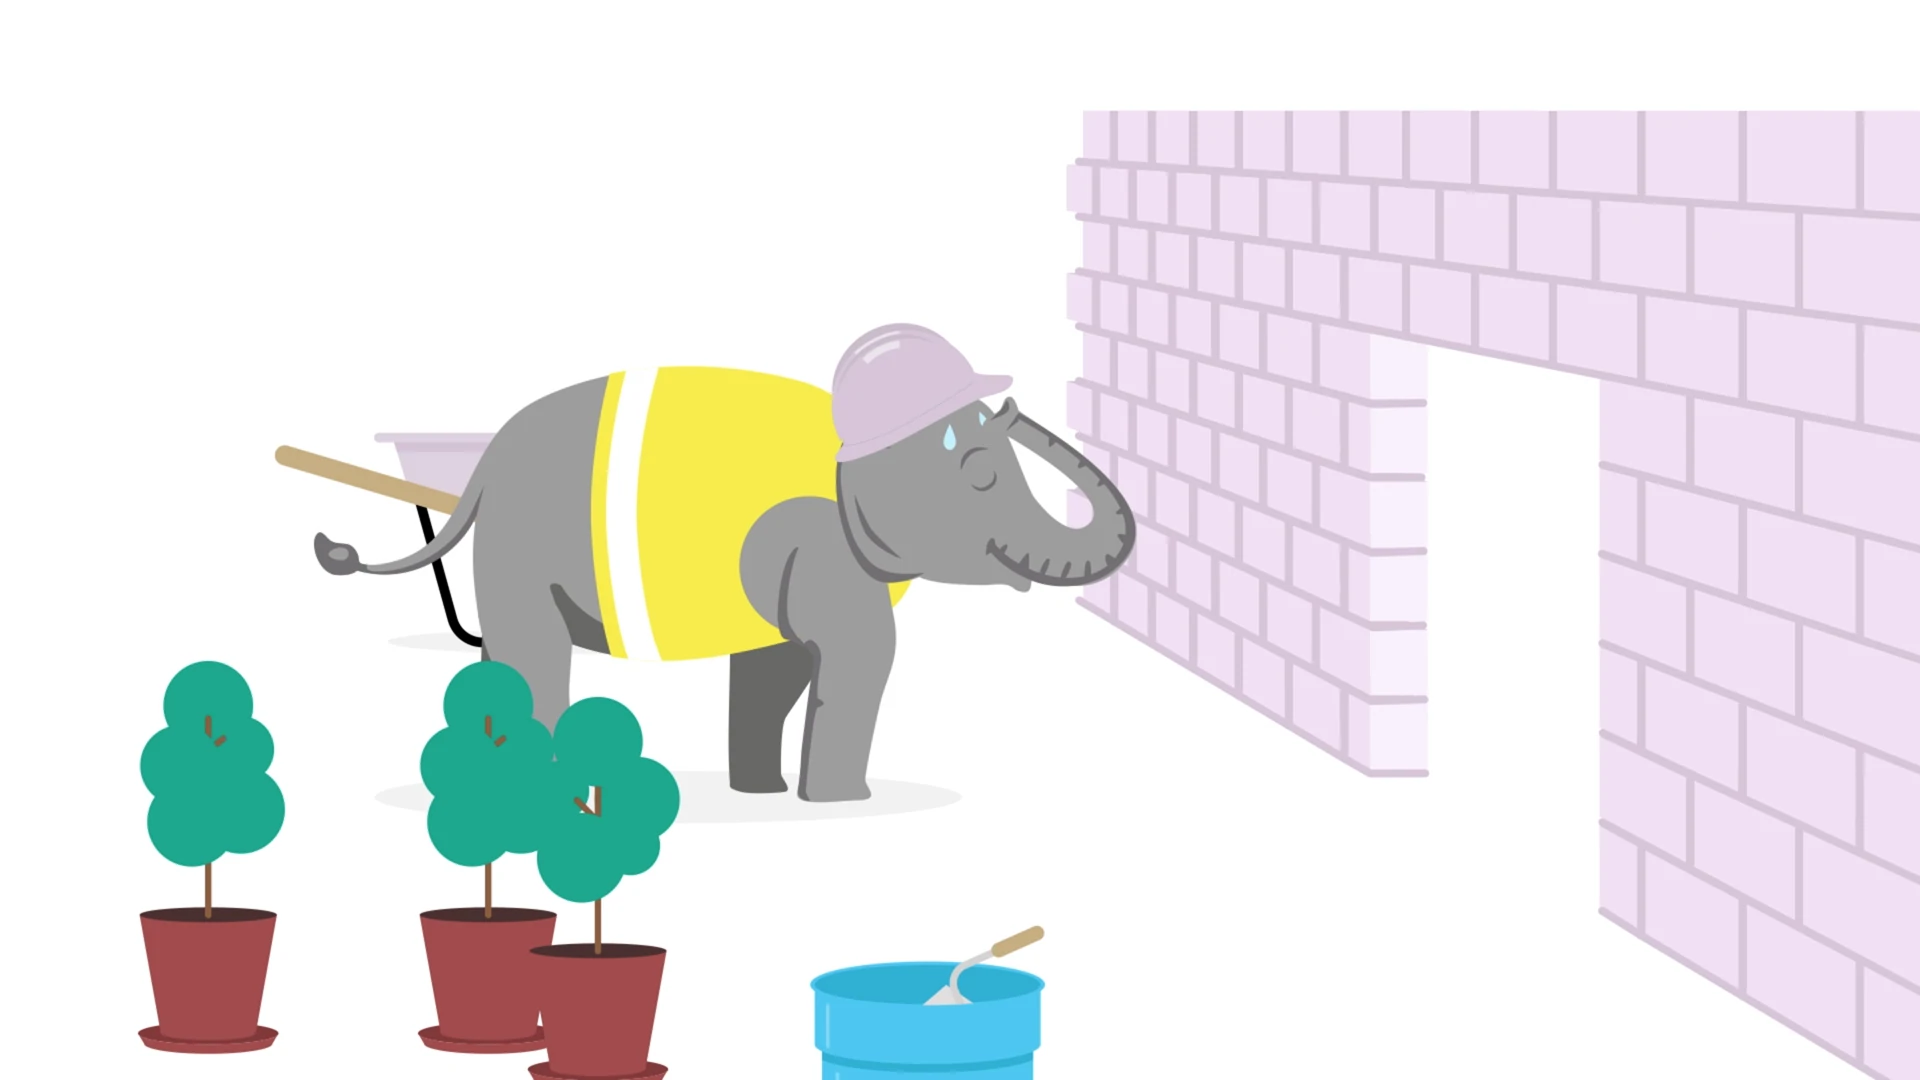 vidéo d’Ellie de Drunk Elephant en train de construire une brique rose 